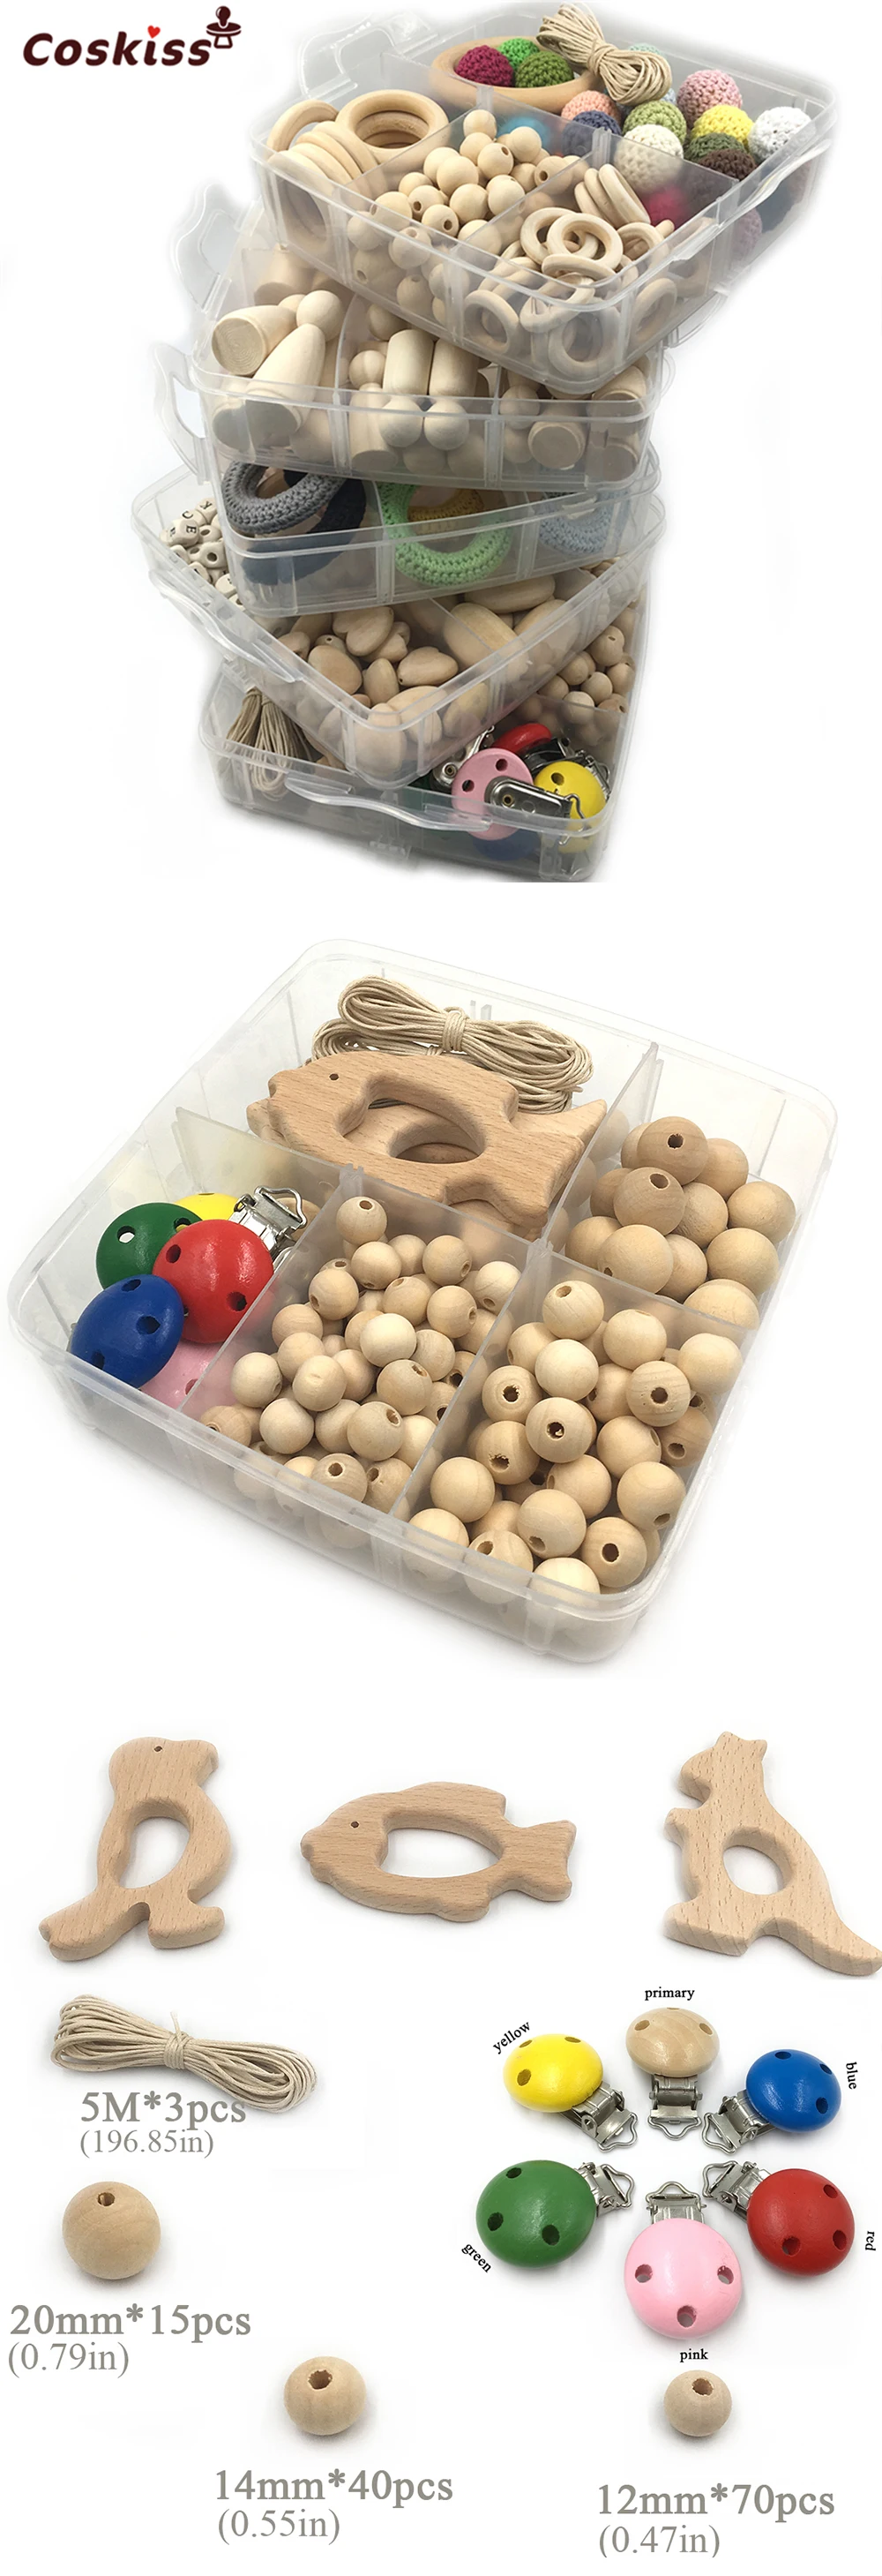 5 штук в упаковке, деревянные кольца для вязания крючком, деревянные колышки для кукол, смешанные цвета, вязанная Соска с бусами, клипсы, различные деревянные бусины, DIY, детские игрушки для прорезывателей